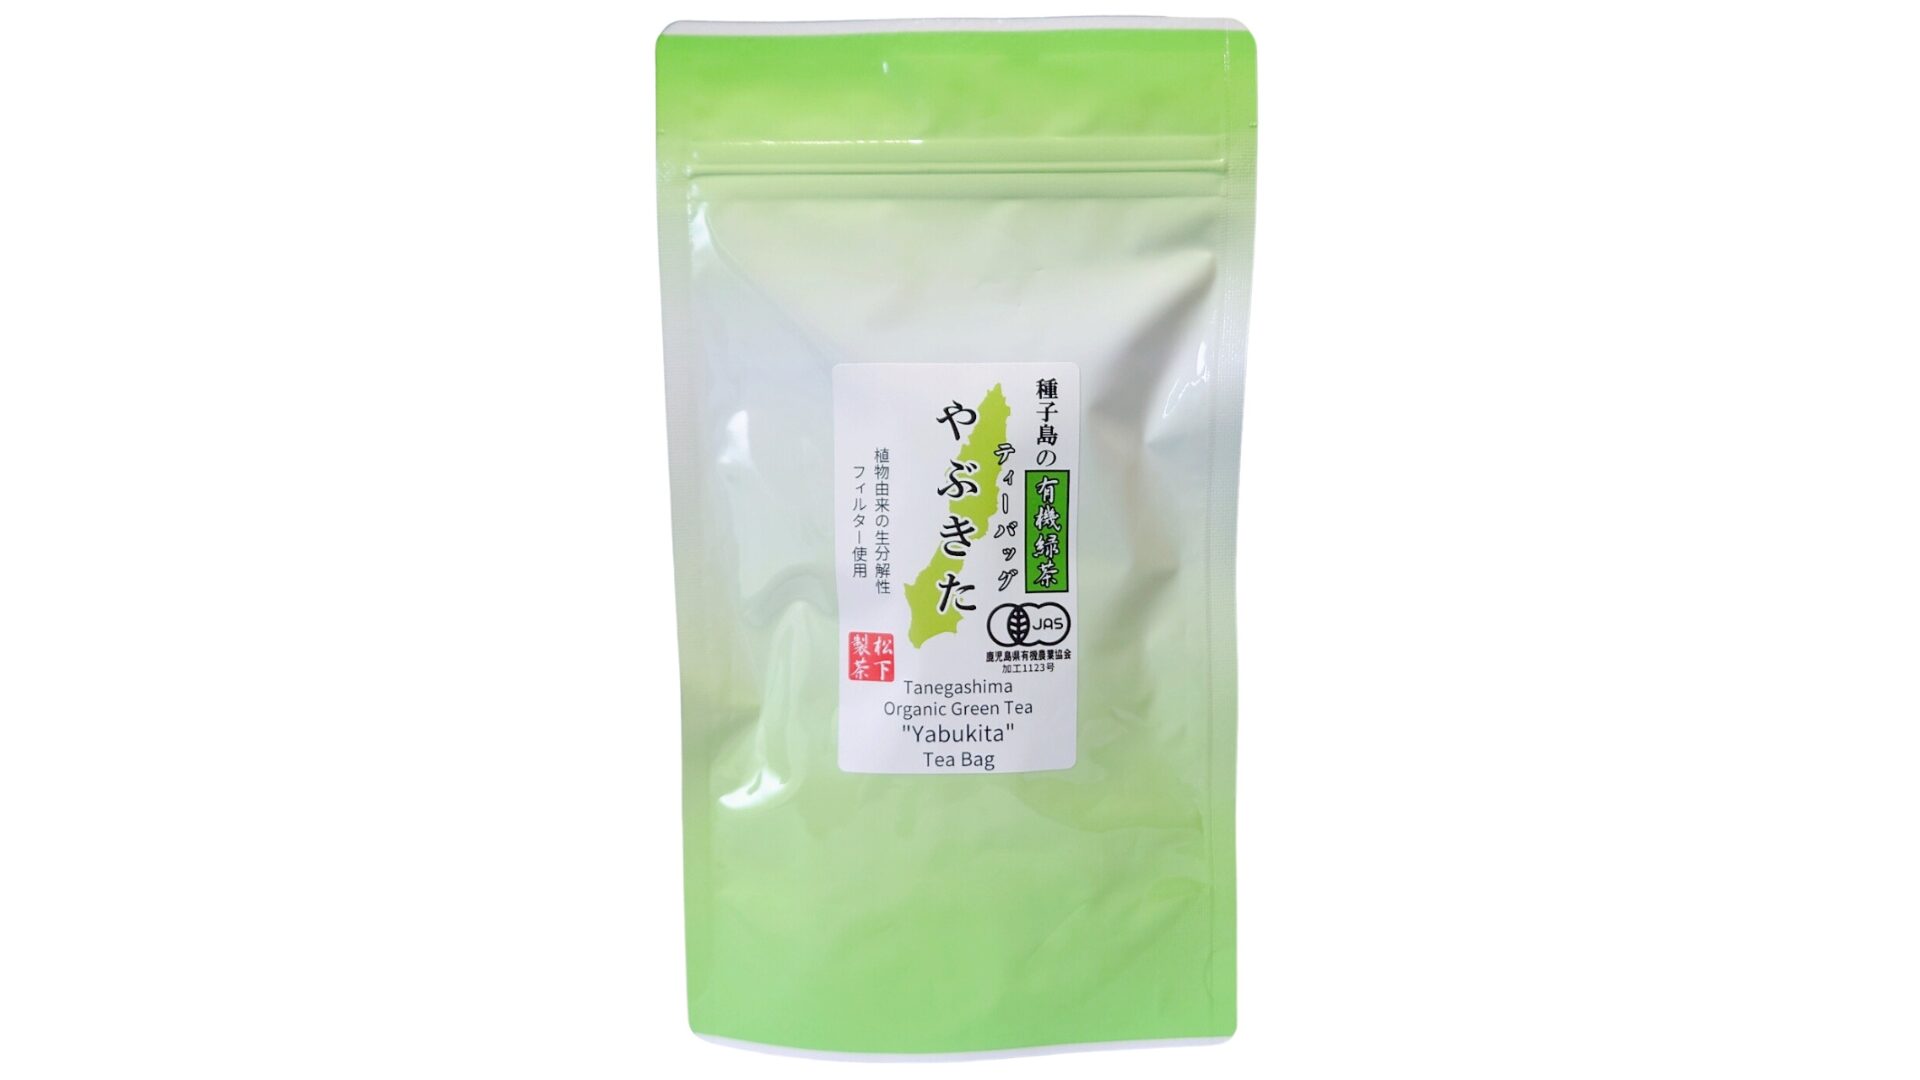 松下製茶 種子島の有機緑茶ティーバッグ『やぶきた』 40g(2g×20袋入り)